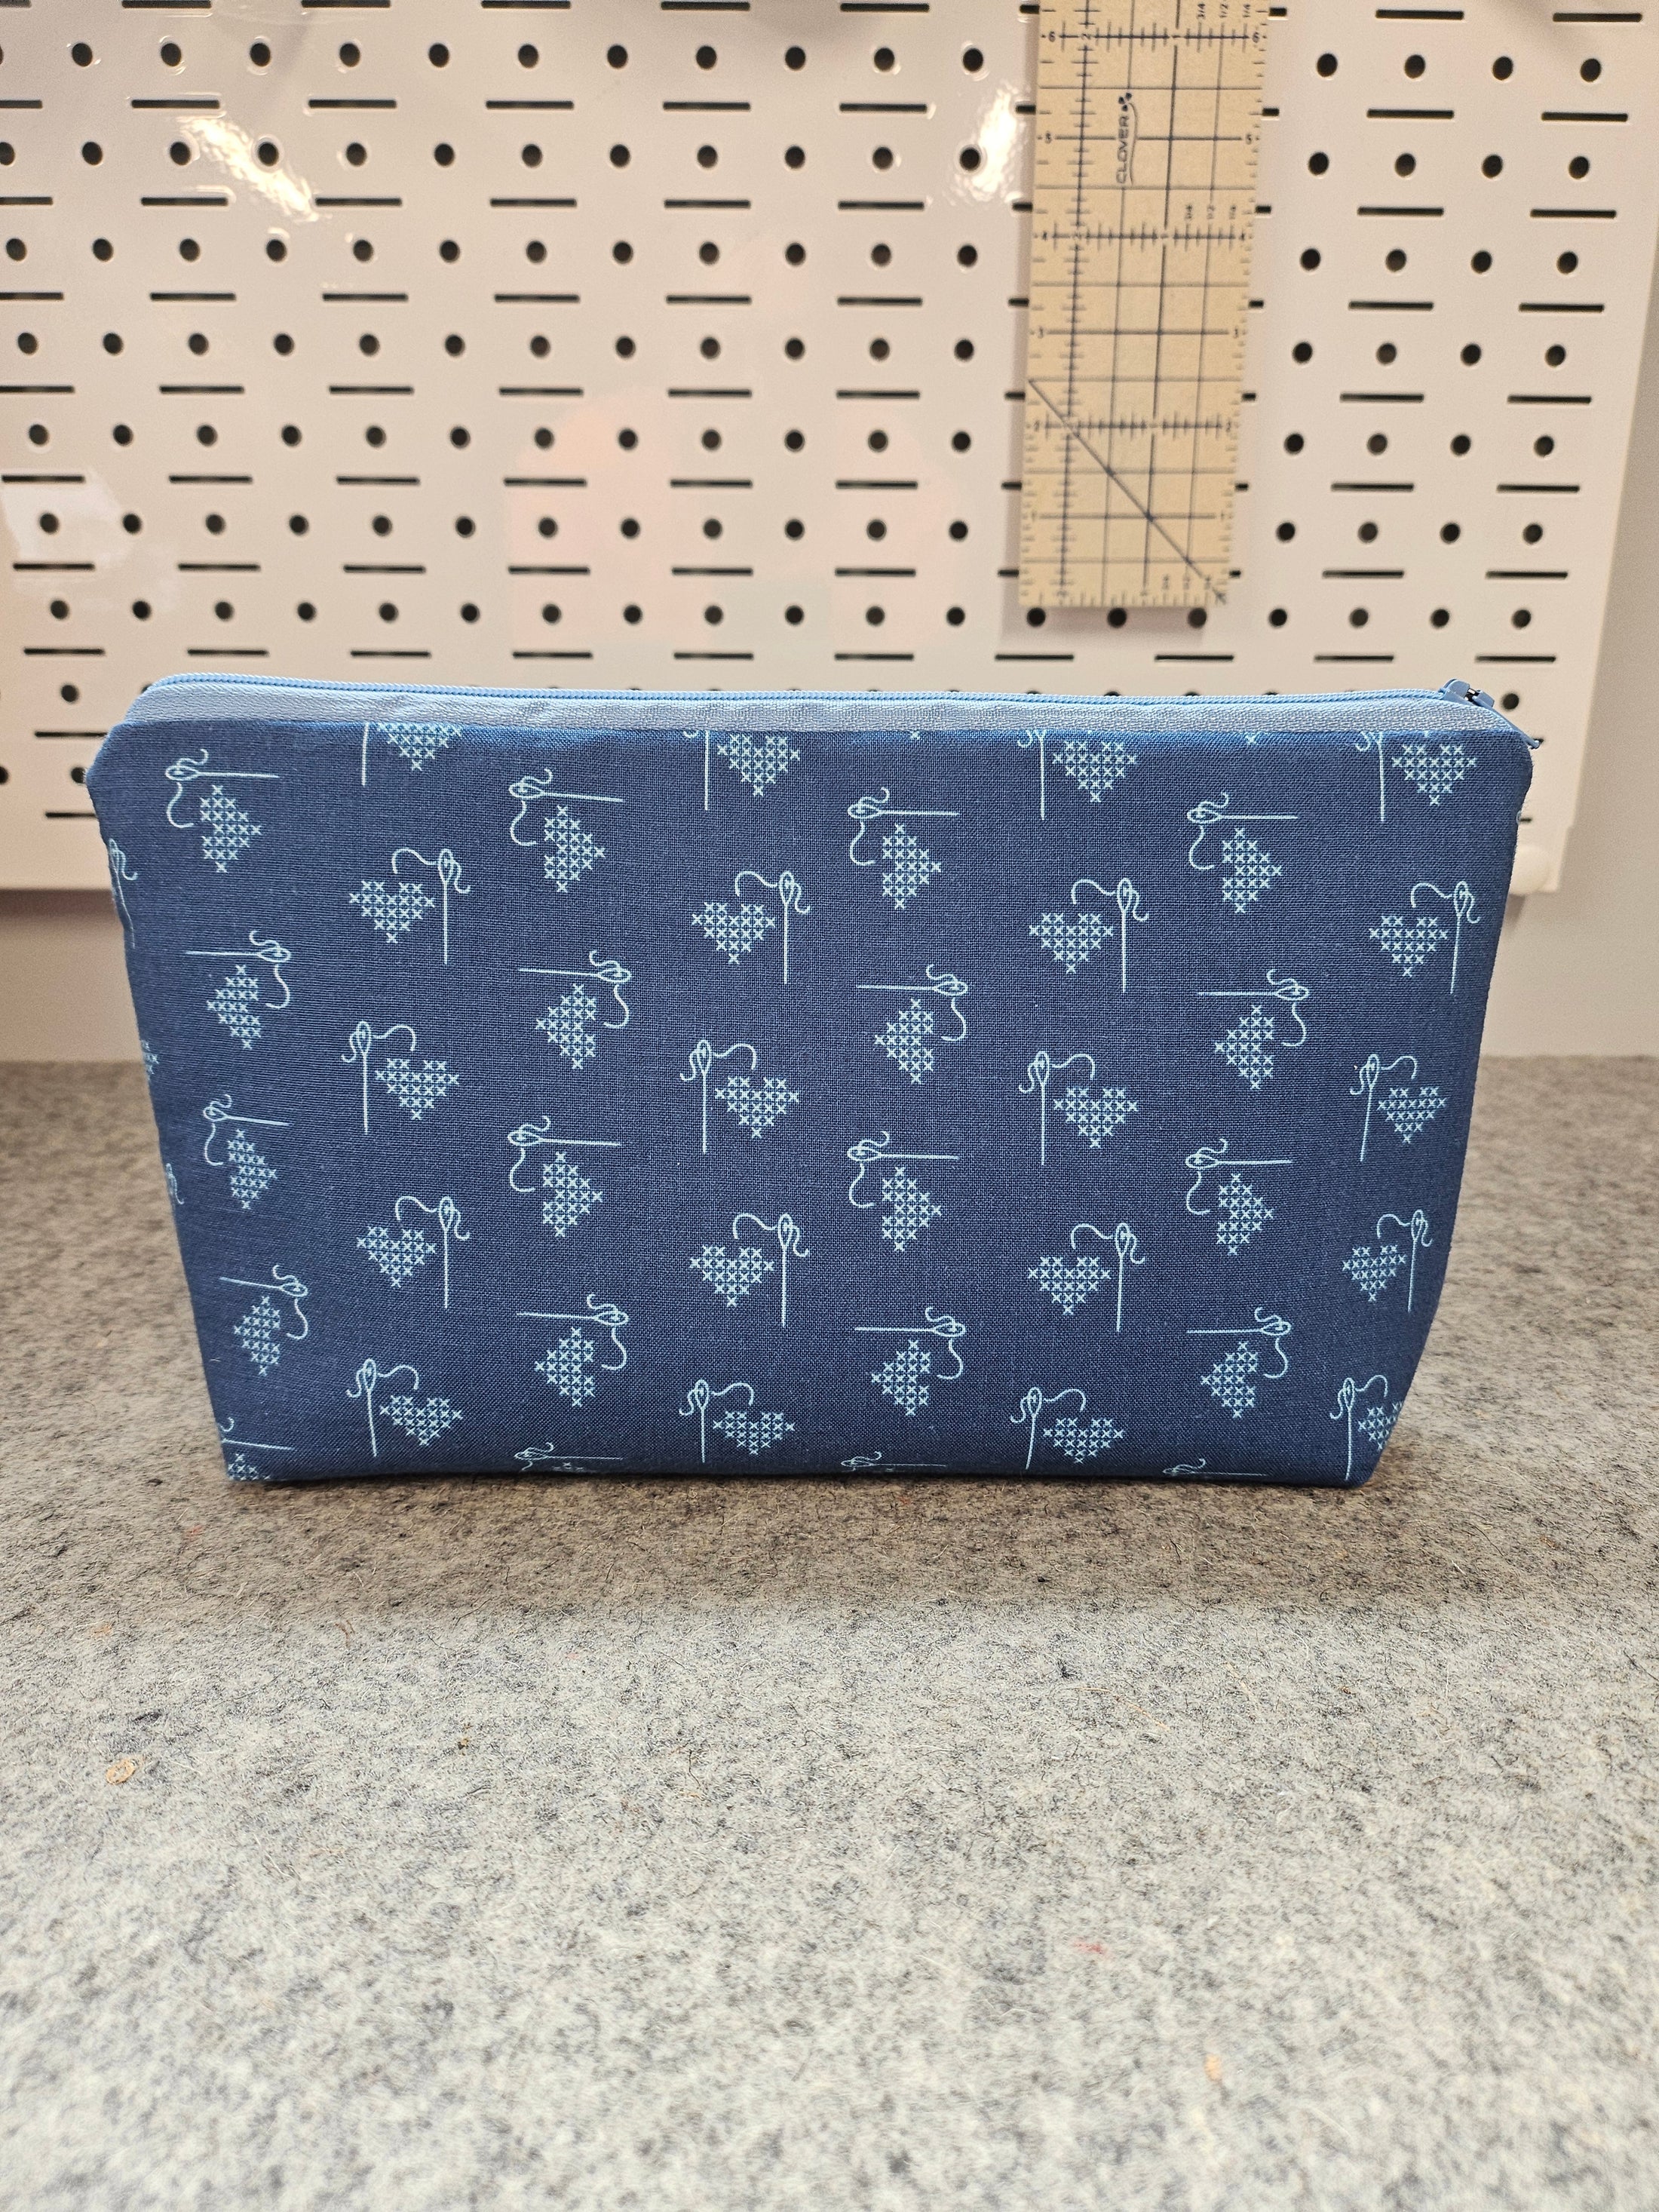 Blue heart cross stitch project bag zipper pouch.